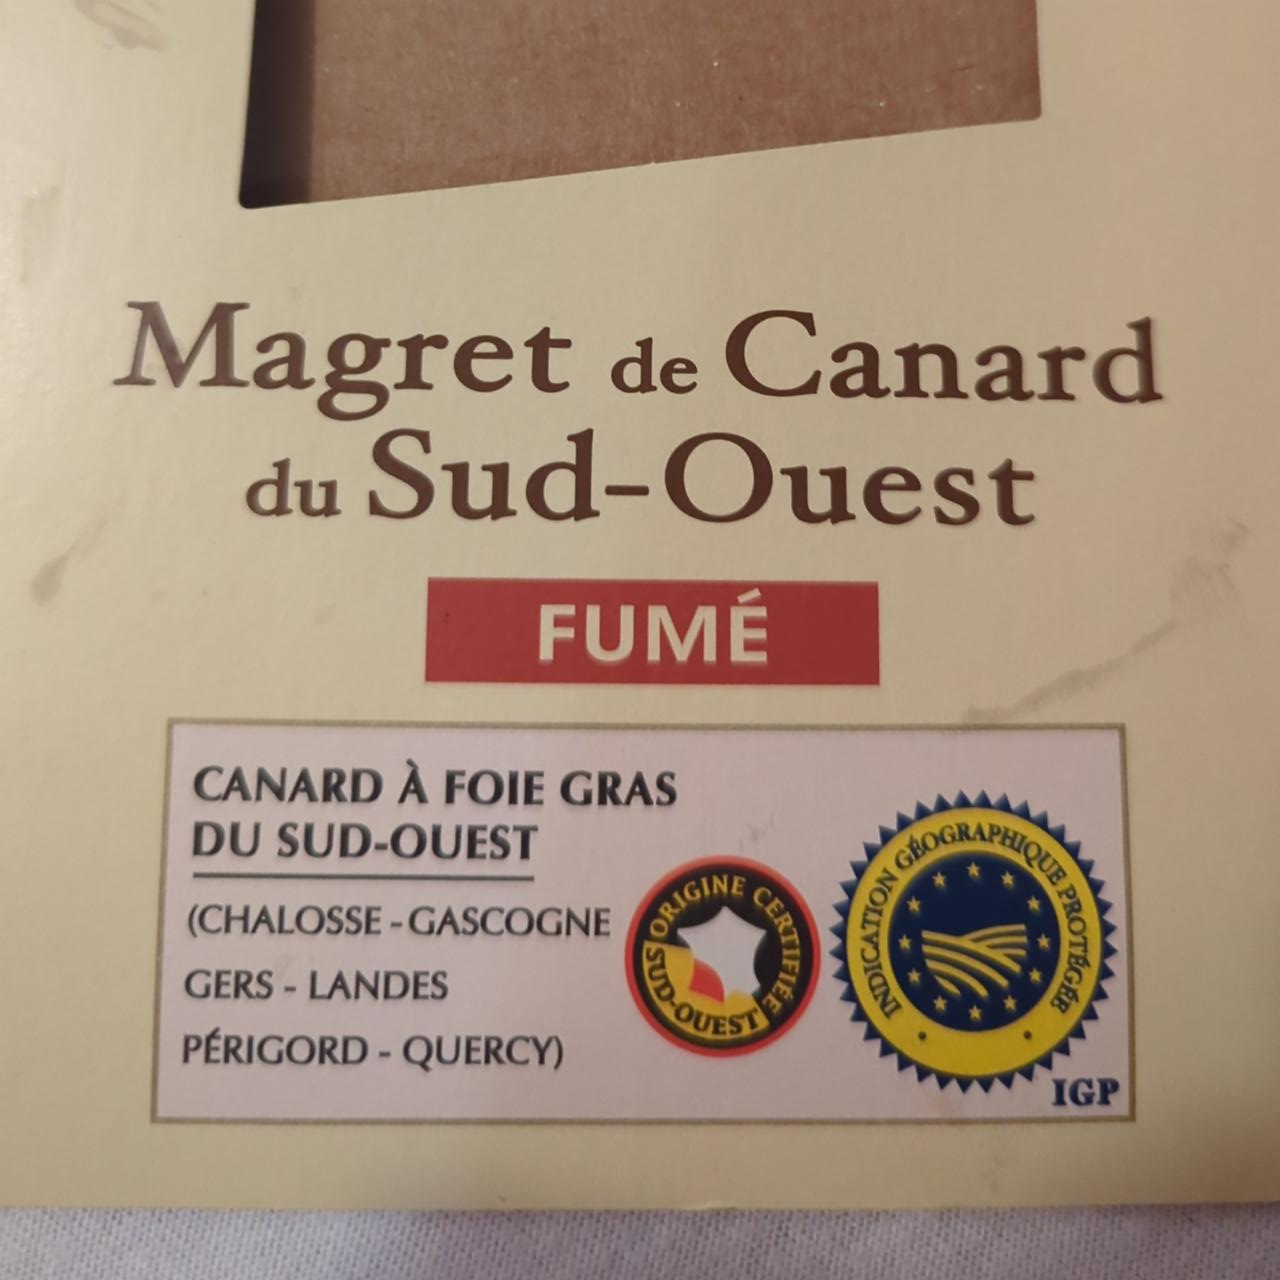 Fotografie - Margret de canard du sud-ouest fumé Reflets de France